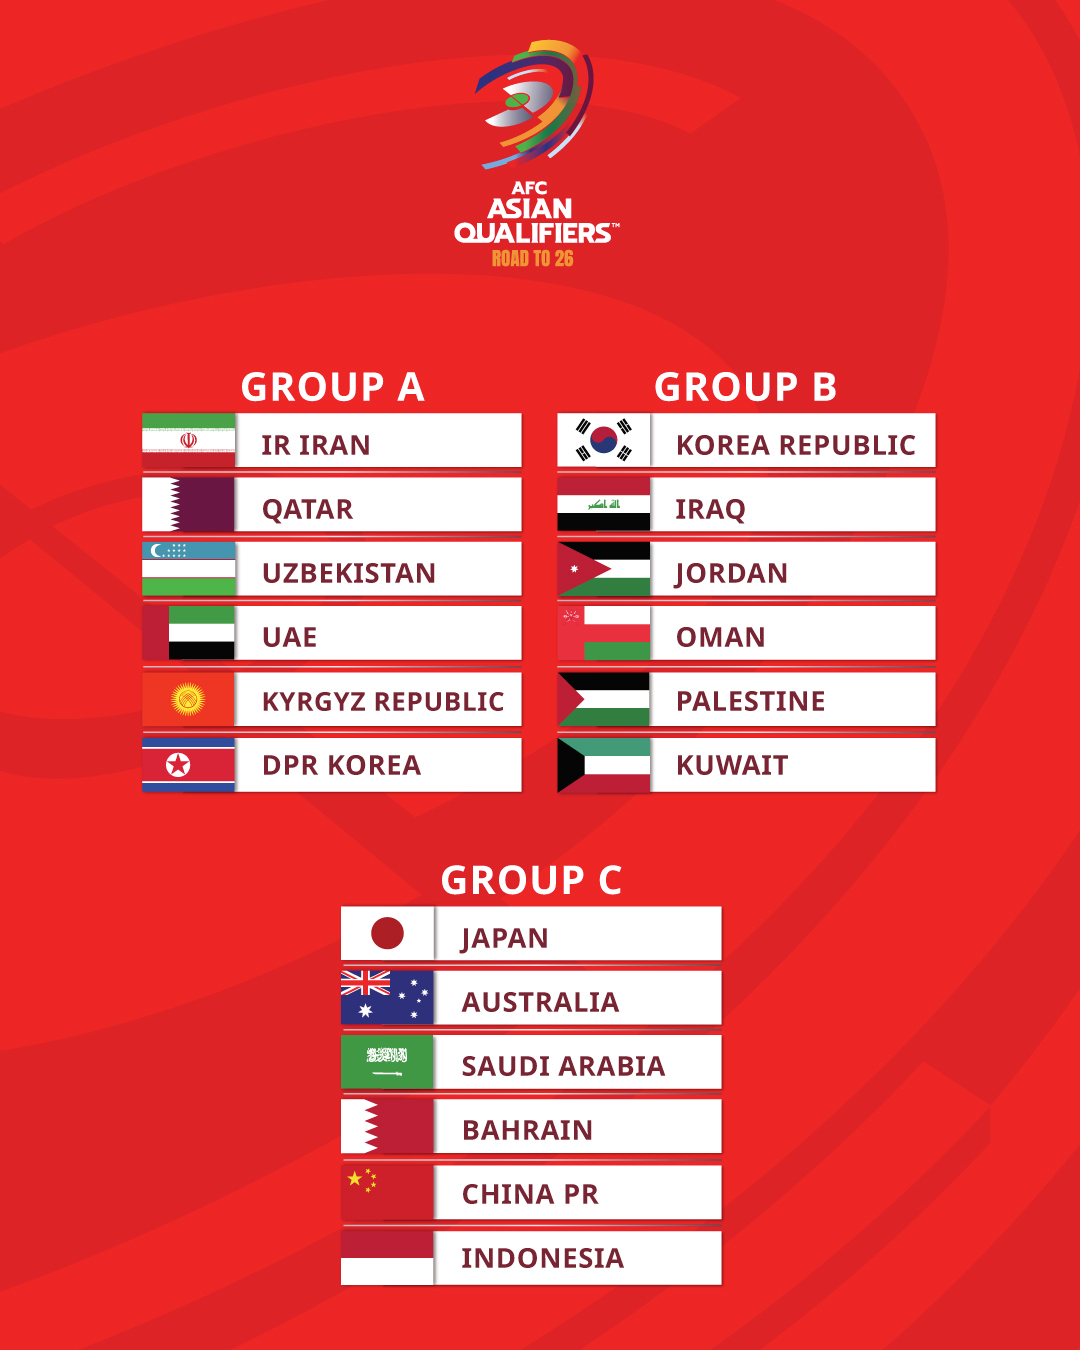 27일(한국시간) 말레이시아 쿠알라룸푸르에 있는 아시아축구연맹(AFC) 본부에서 진행된 2026 북중미 월드컵 아시아지역 3차 예선 조추첨식에서 한국이 B조에 편성됐다. 한국은 B조에서 이라크(55위), 요르단(68위), 오만(76위), 팔레스타인(95위), 쿠웨이트(137위)와 한 조에 속했다. AFC